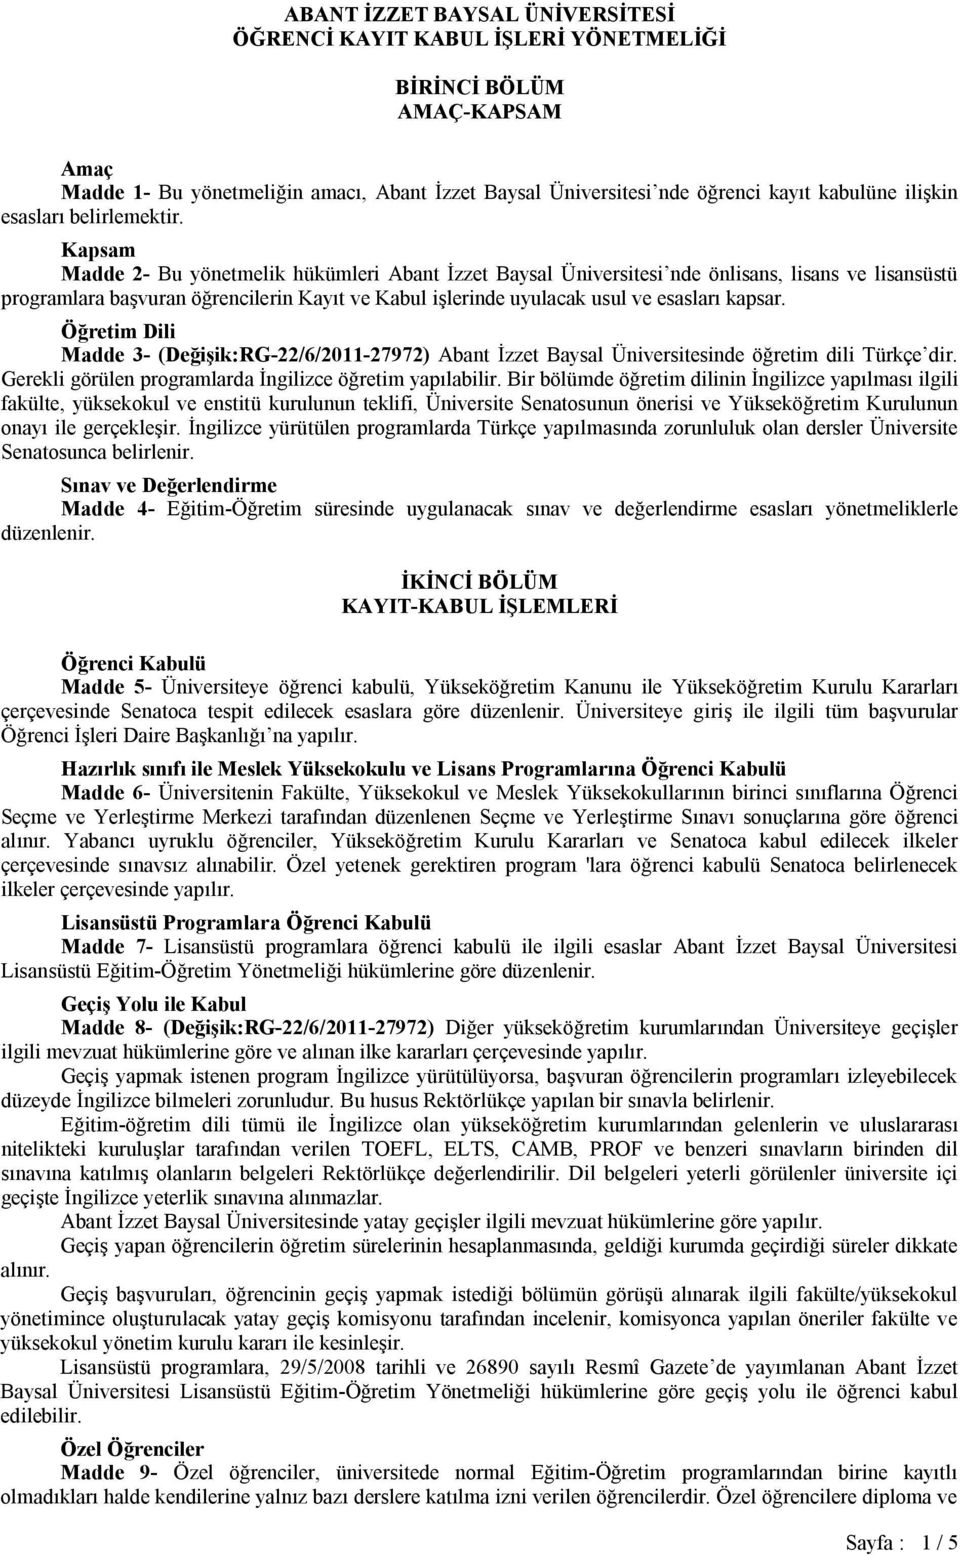 Kapsam Madde 2- Bu yönetmelik hükümleri Abant İzzet Baysal Üniversitesi nde önlisans, lisans ve lisansüstü programlara başvuran öğrencilerin Kayıt ve Kabul işlerinde uyulacak usul ve esasları kapsar.